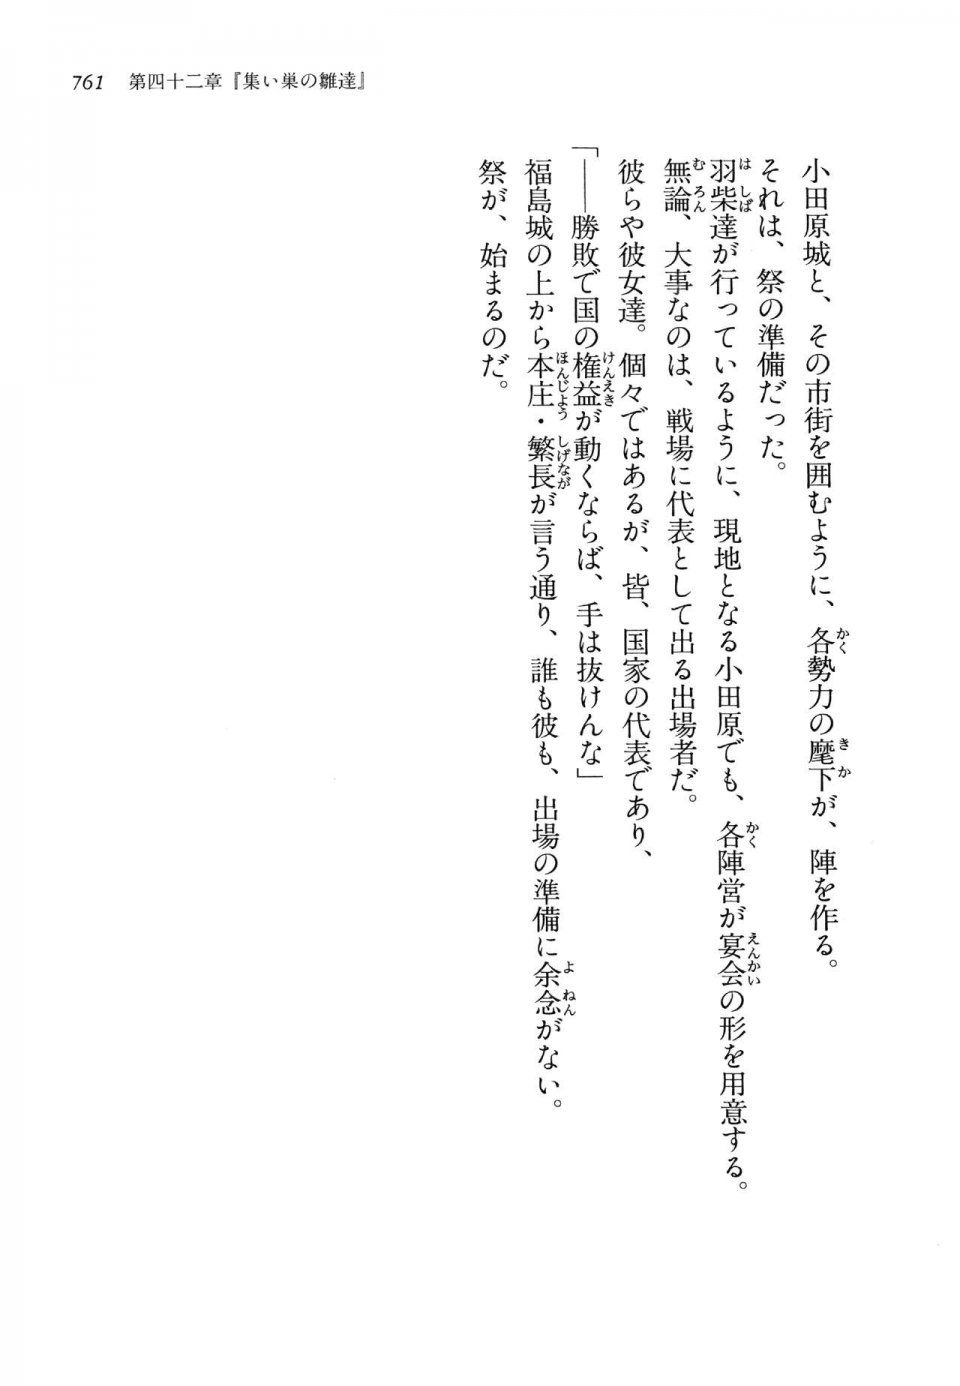 Kyoukai Senjou no Horizon LN Vol 14(6B) - Photo #761